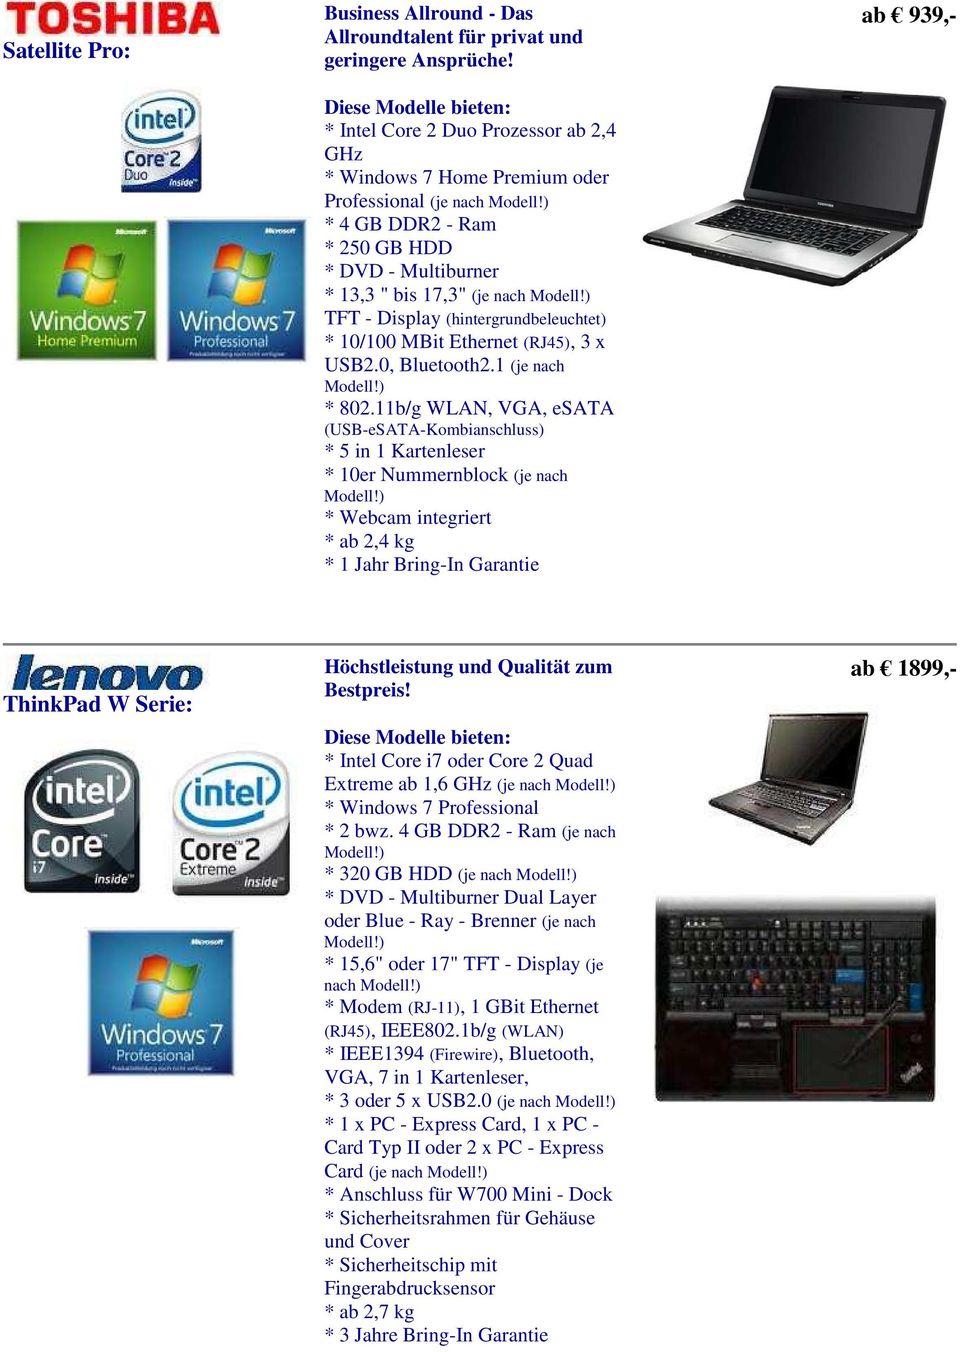 1 (je nach * 802.11b/g WLAN, VGA, esata (USB-eSATA-Kombianschluss) * 10er Nummernblock (je nach * ab 2,4 kg ab 939,- ThinkPad W Serie: Höchstleistung und Qualität zum Bestpreis!